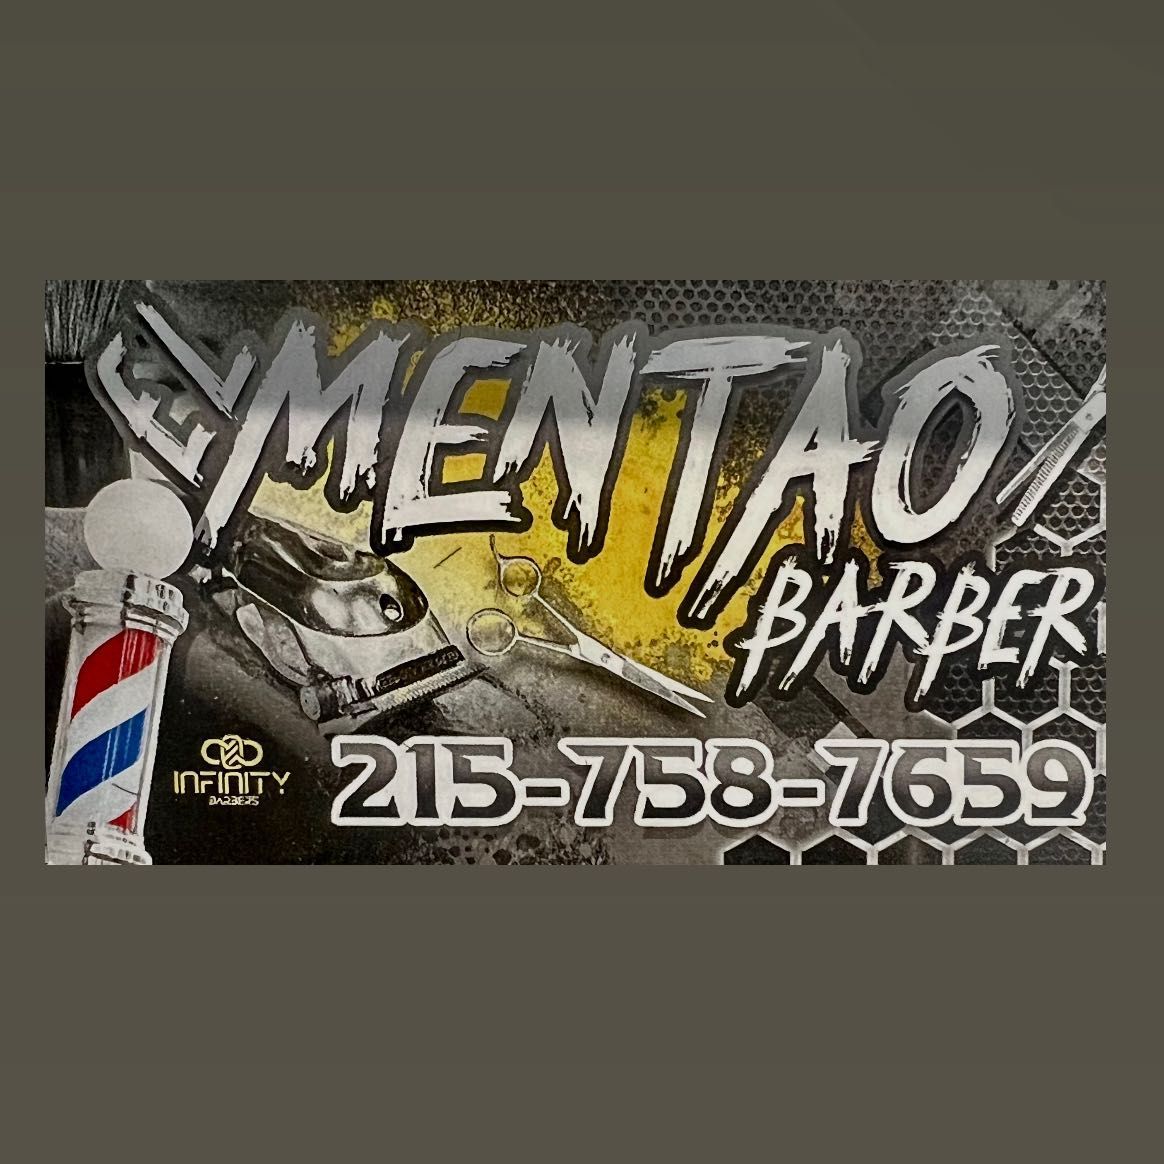 El mentao barber, 1406 Handlir Dr, Bel Air, 21015